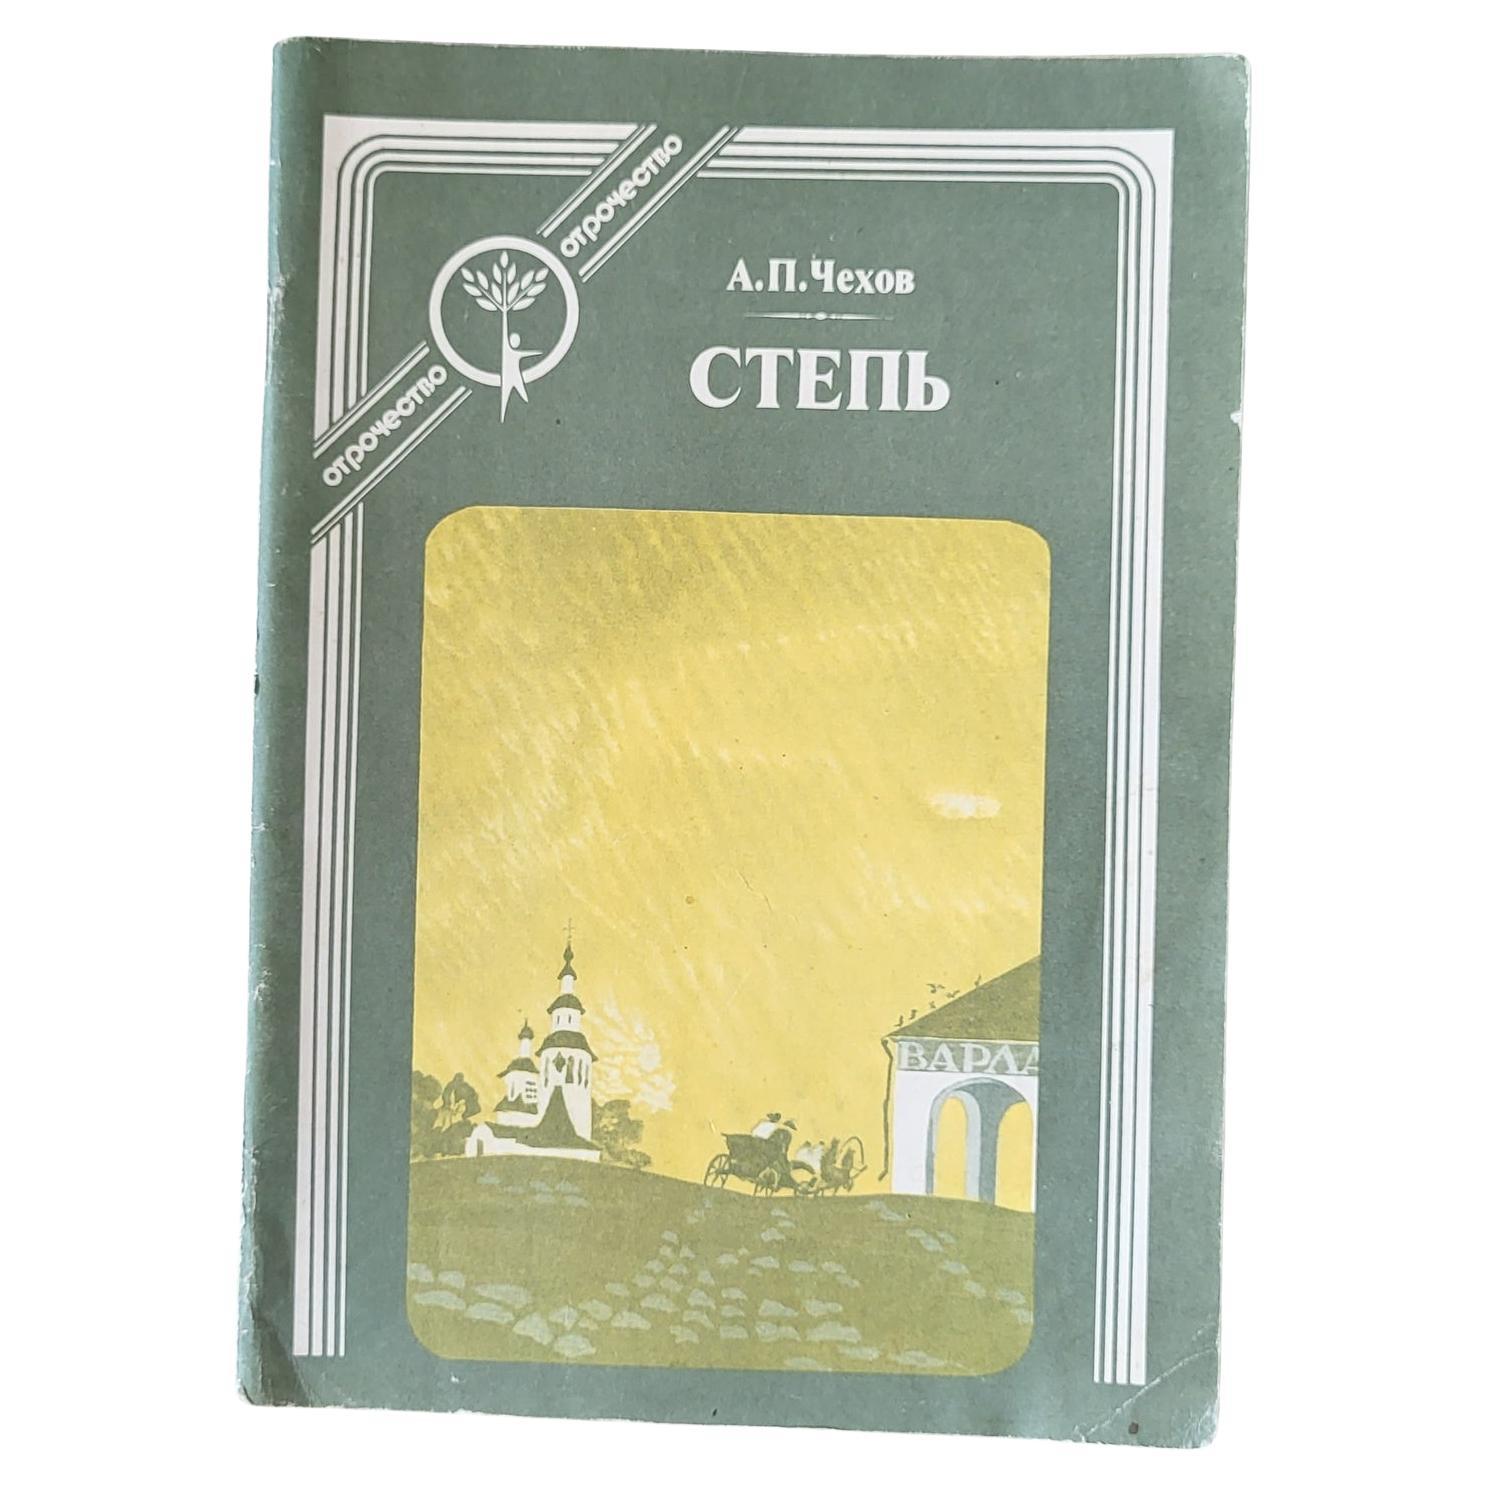 Vintage Soviet Book: 'Steppe' by a.P. Chekhov, circa 1989, 1J49